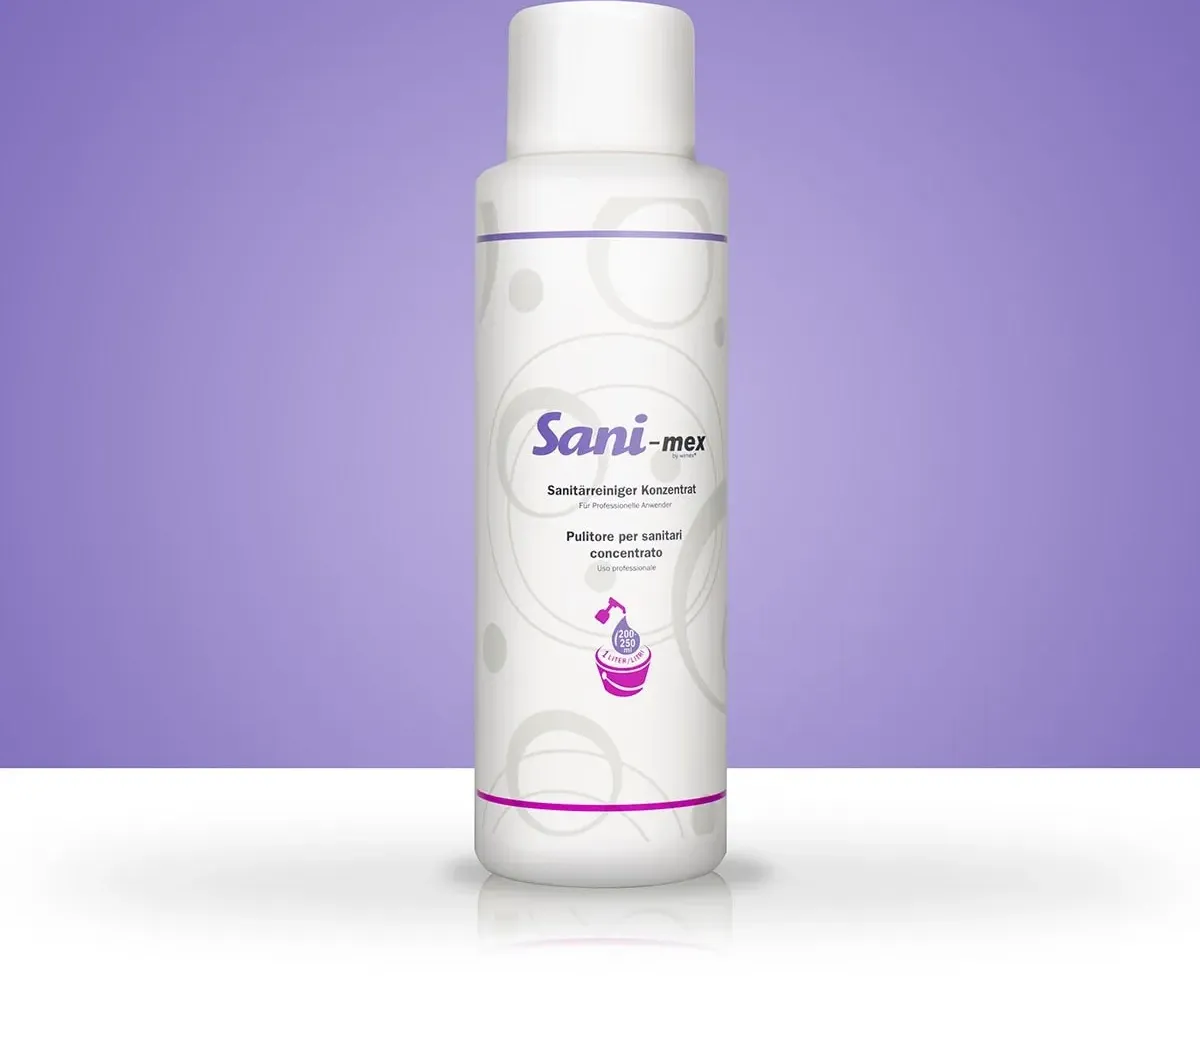 Sani-mex detergente per sanitari concentrato. 1 litro